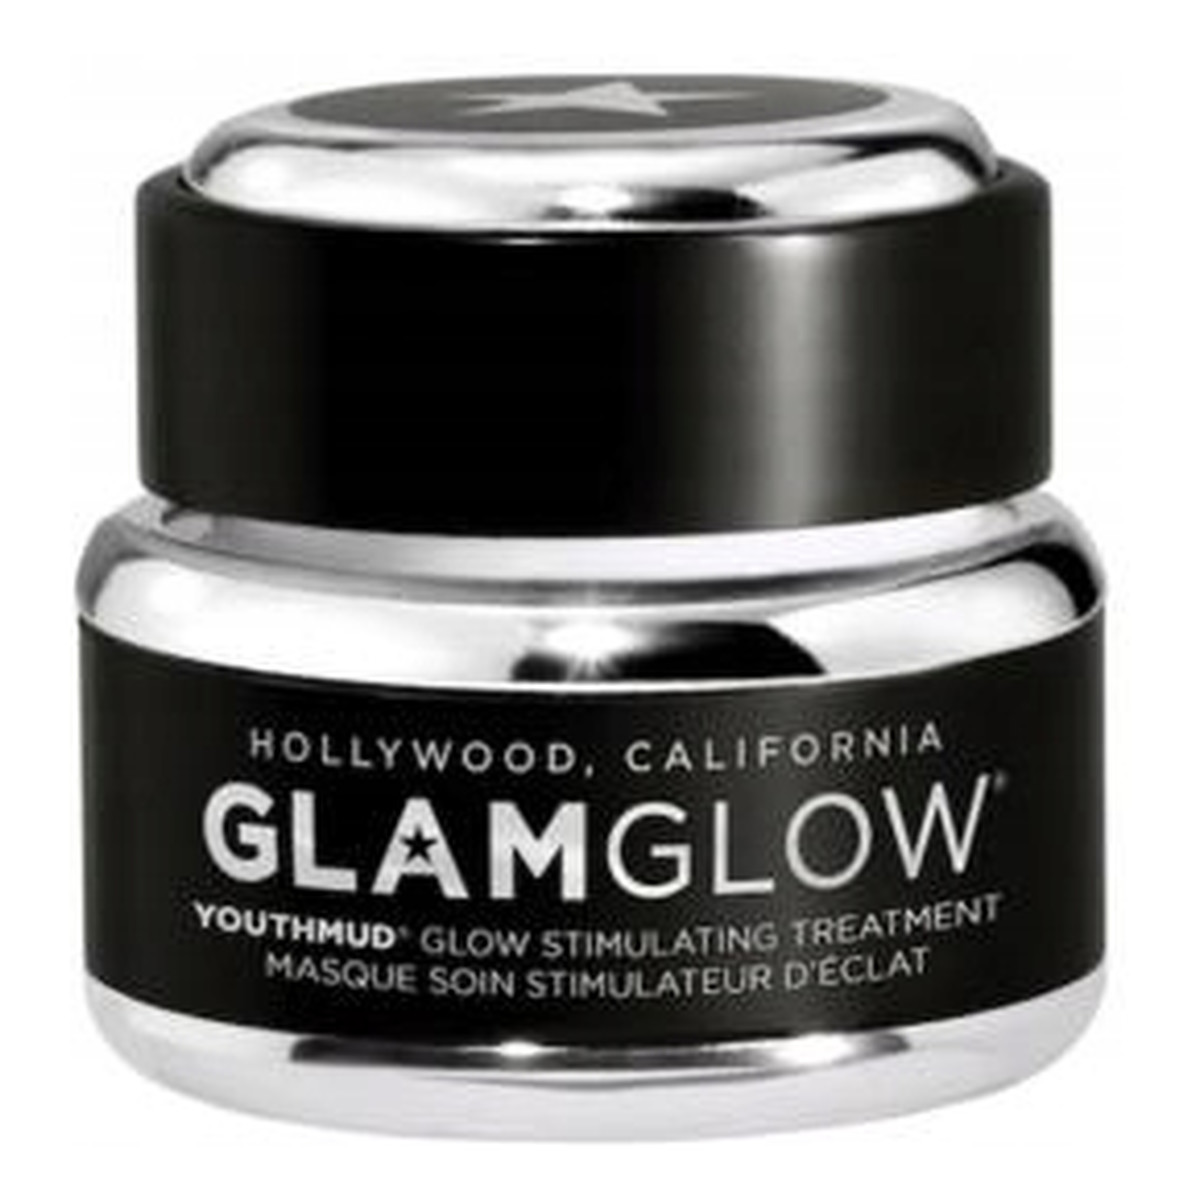 GlamGlow Youthmud Glow Stimulating Treatment Mask stymulująca maska zabiegowa 15g